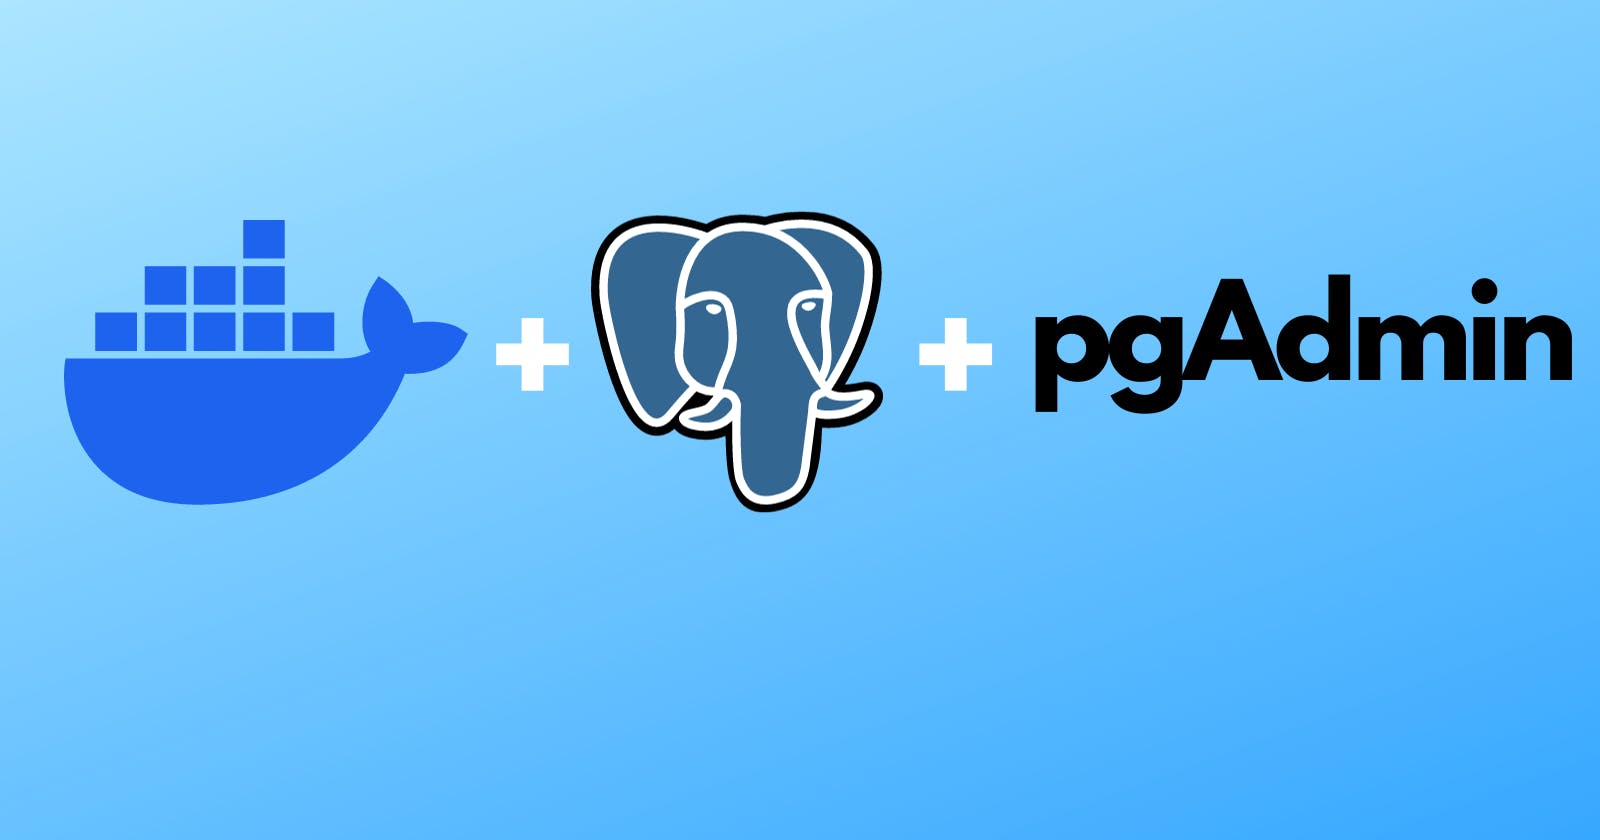 Docker + PostgreSQL +  pgAdmin